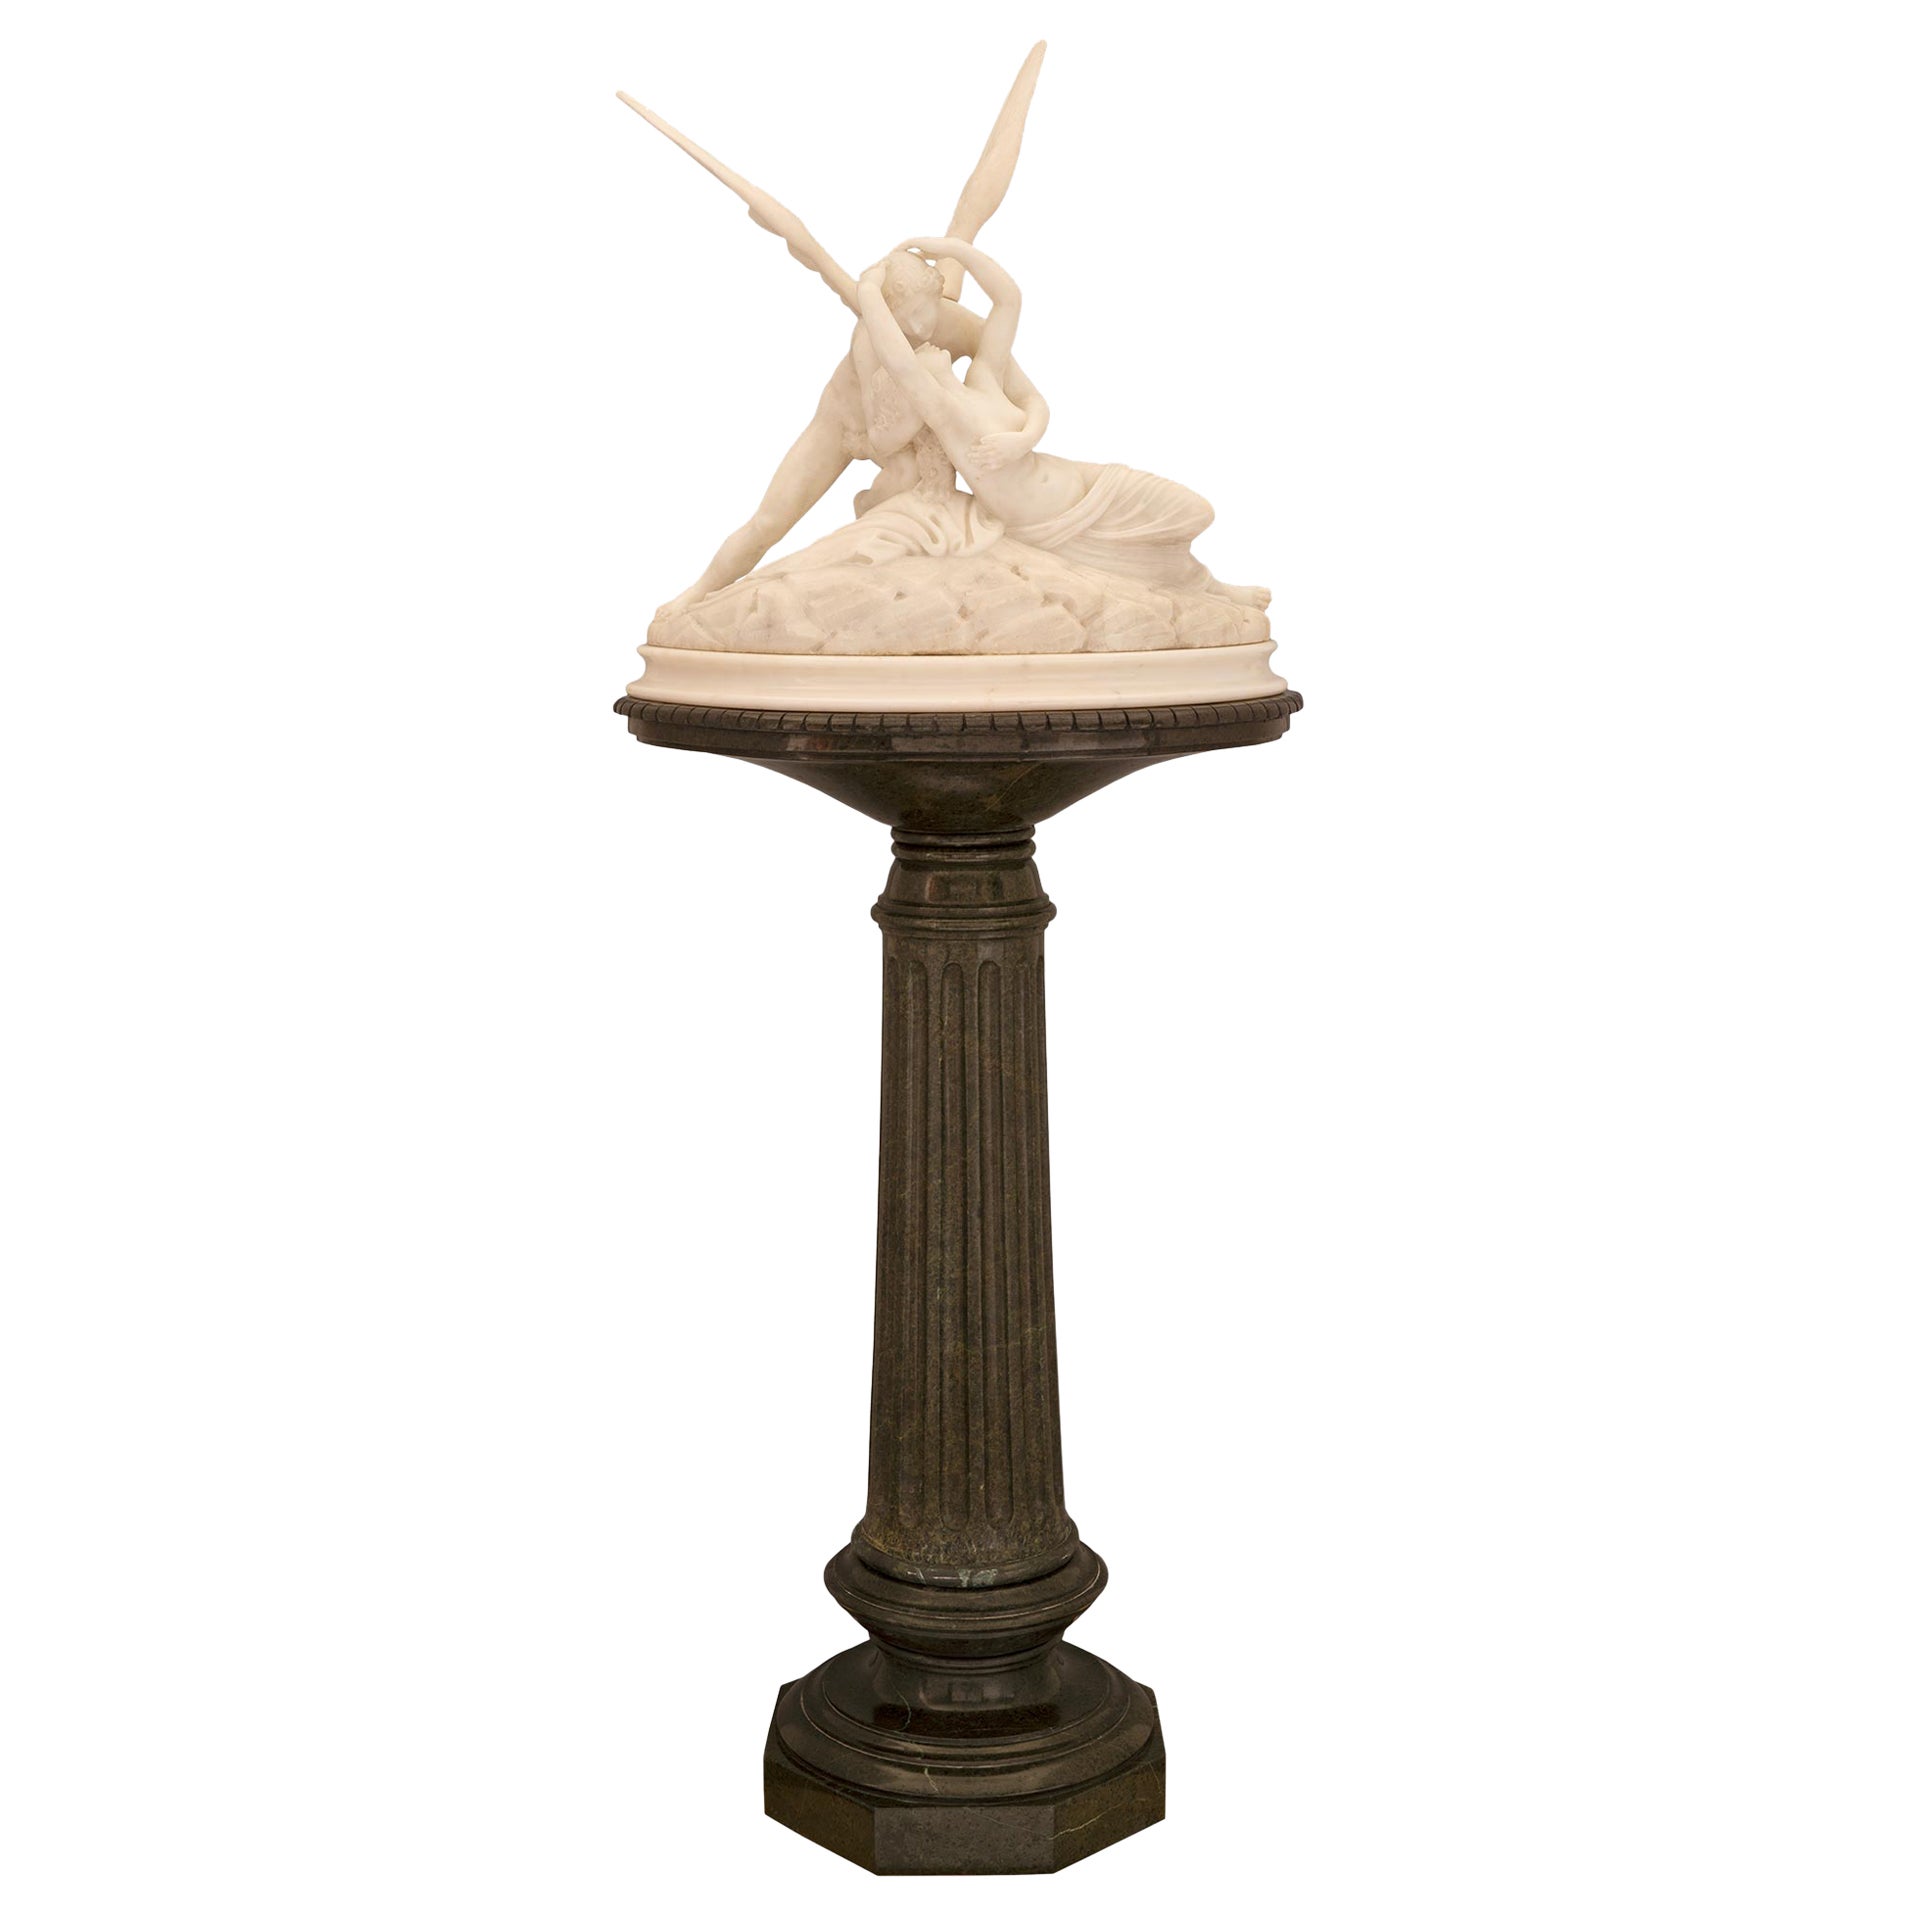 Statue de Cupidon et Psyché de style néo-classique français du milieu du 19e siècle